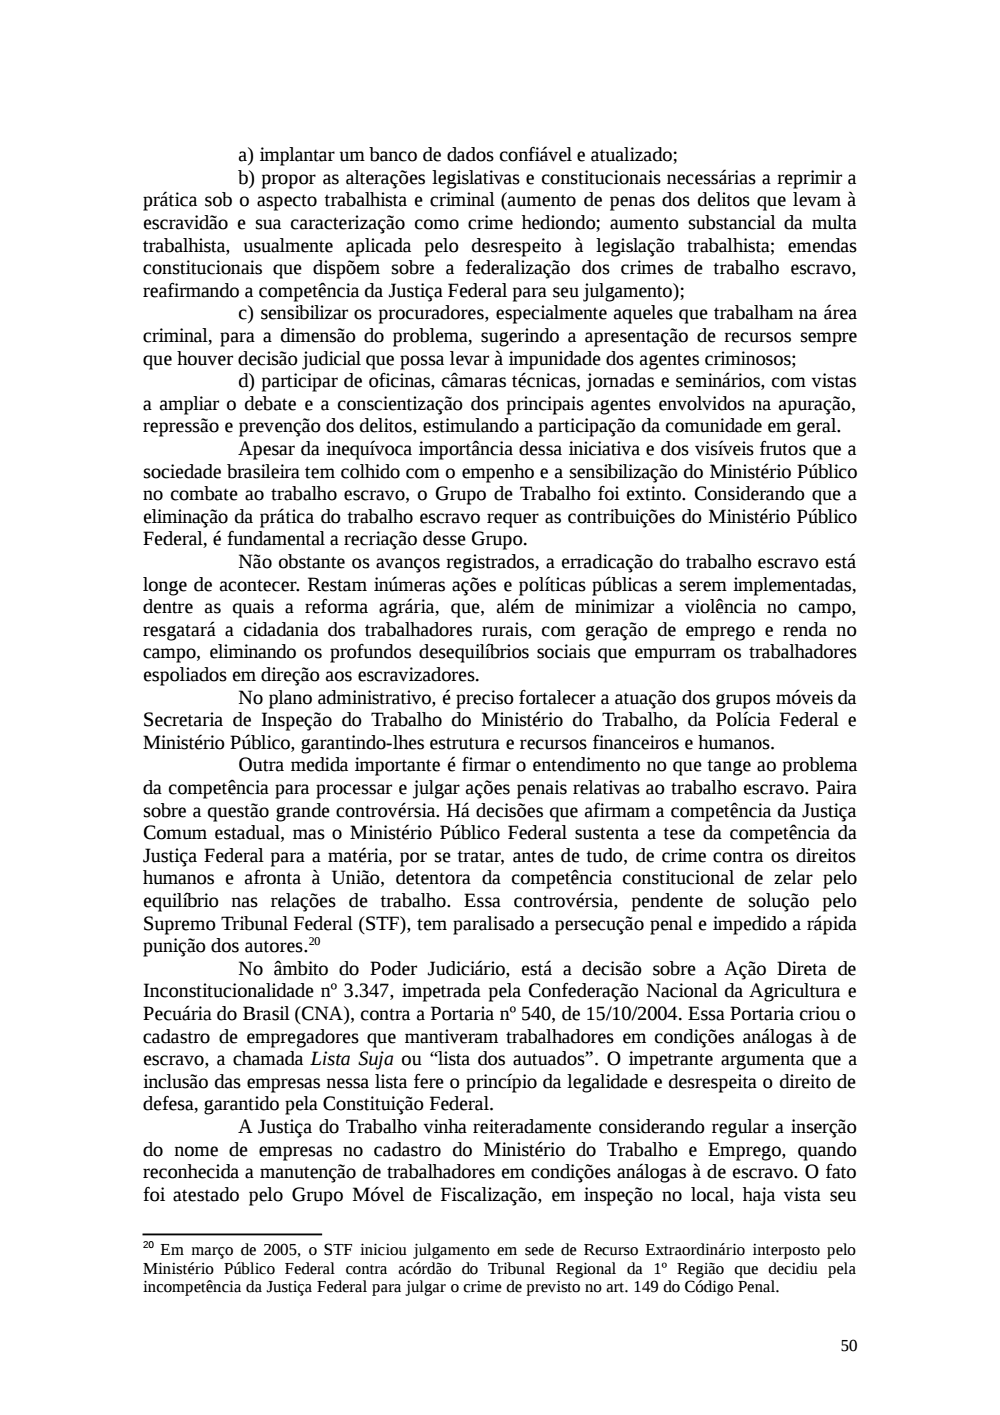 Page 50 from Relatório final da comissão